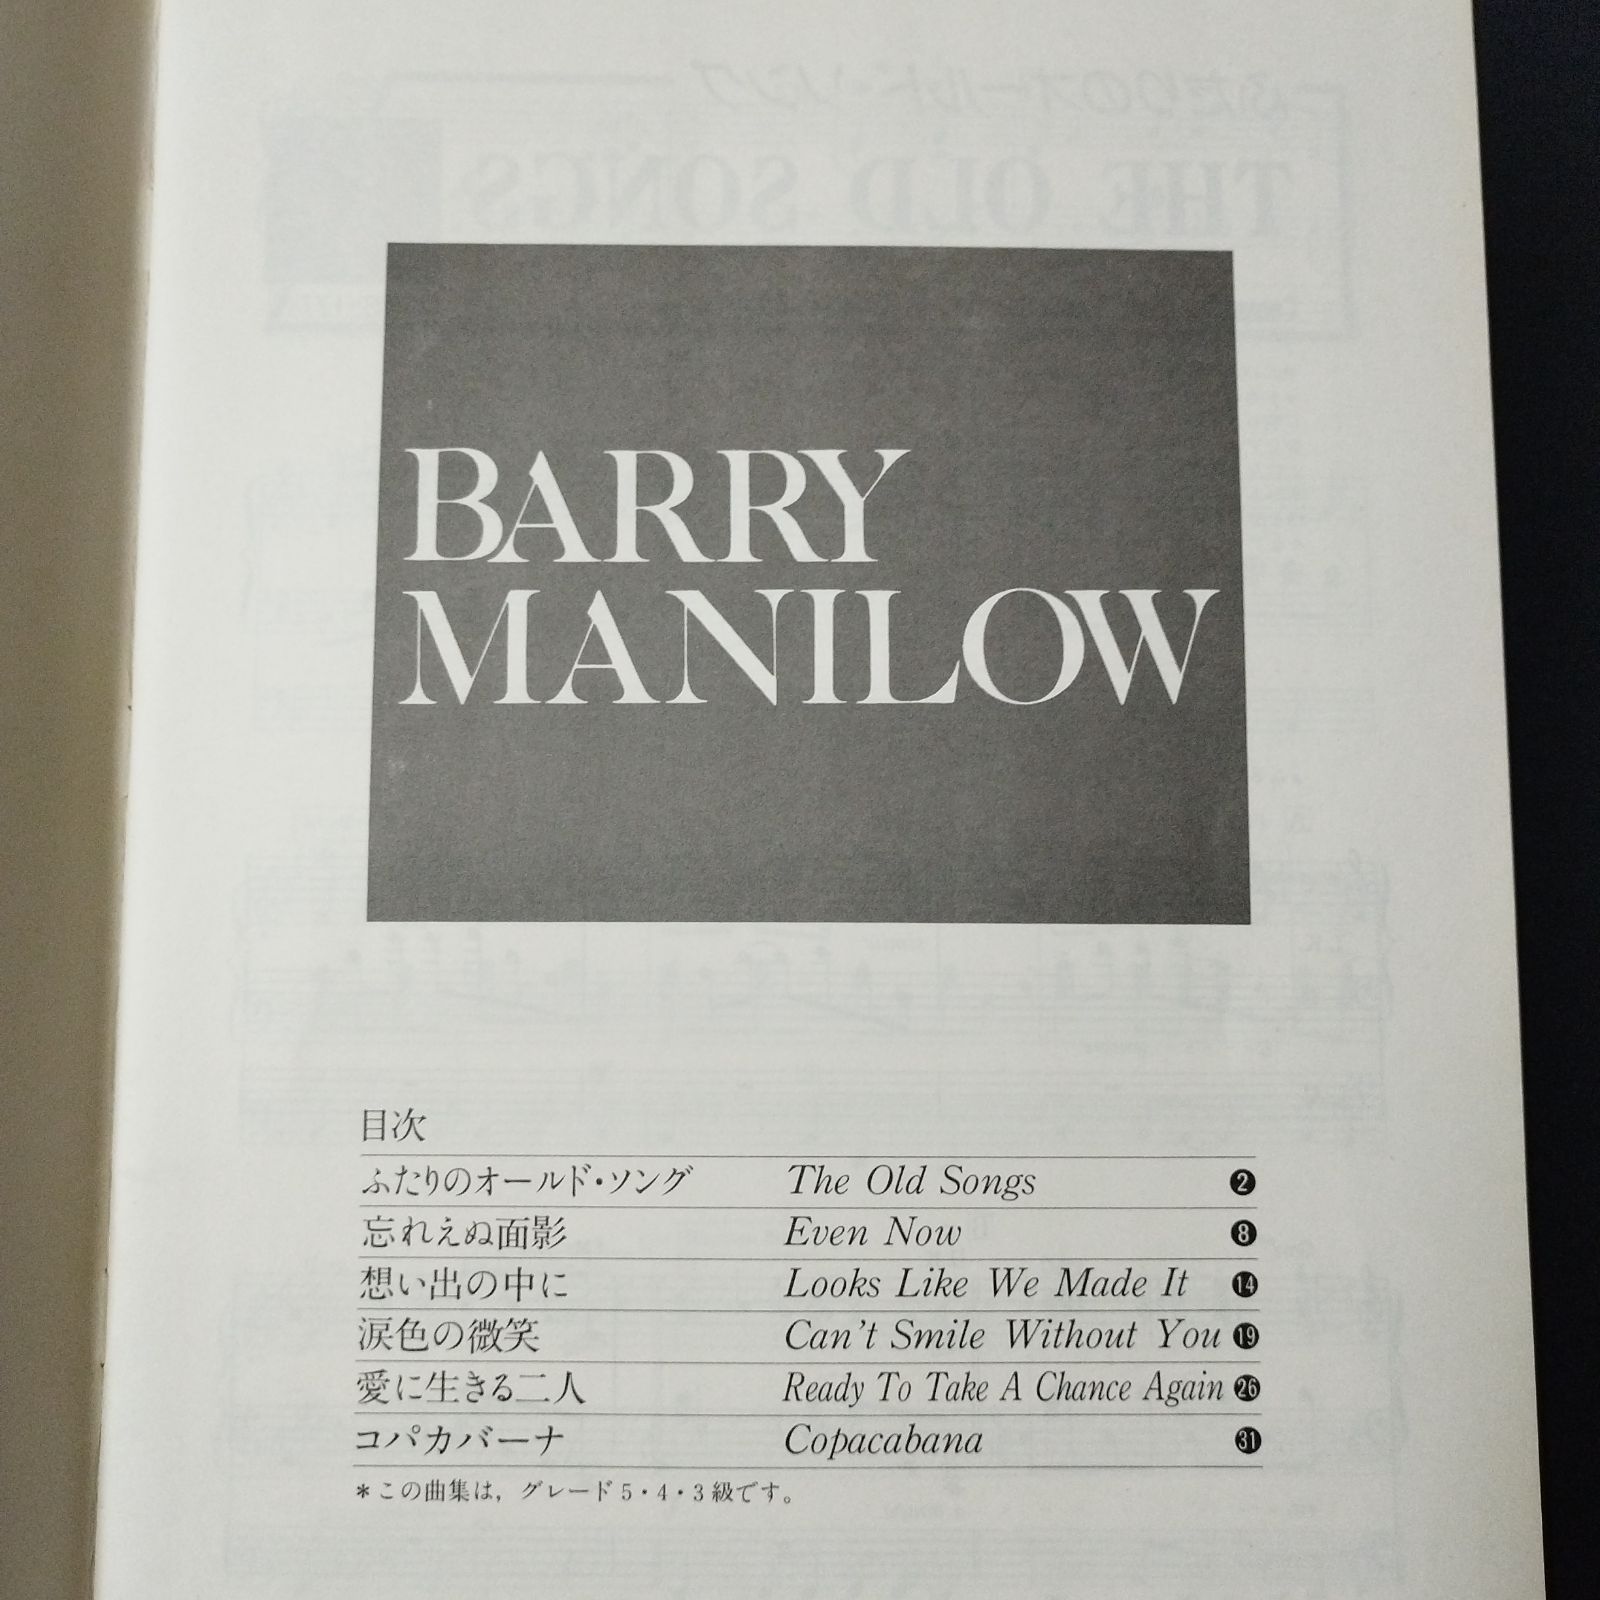 エレクトーンで弾く アーチスト・ベスト・コレクション21 バリー・マニロウ 1983年発行 楽譜 棚Sa10 - メルカリ